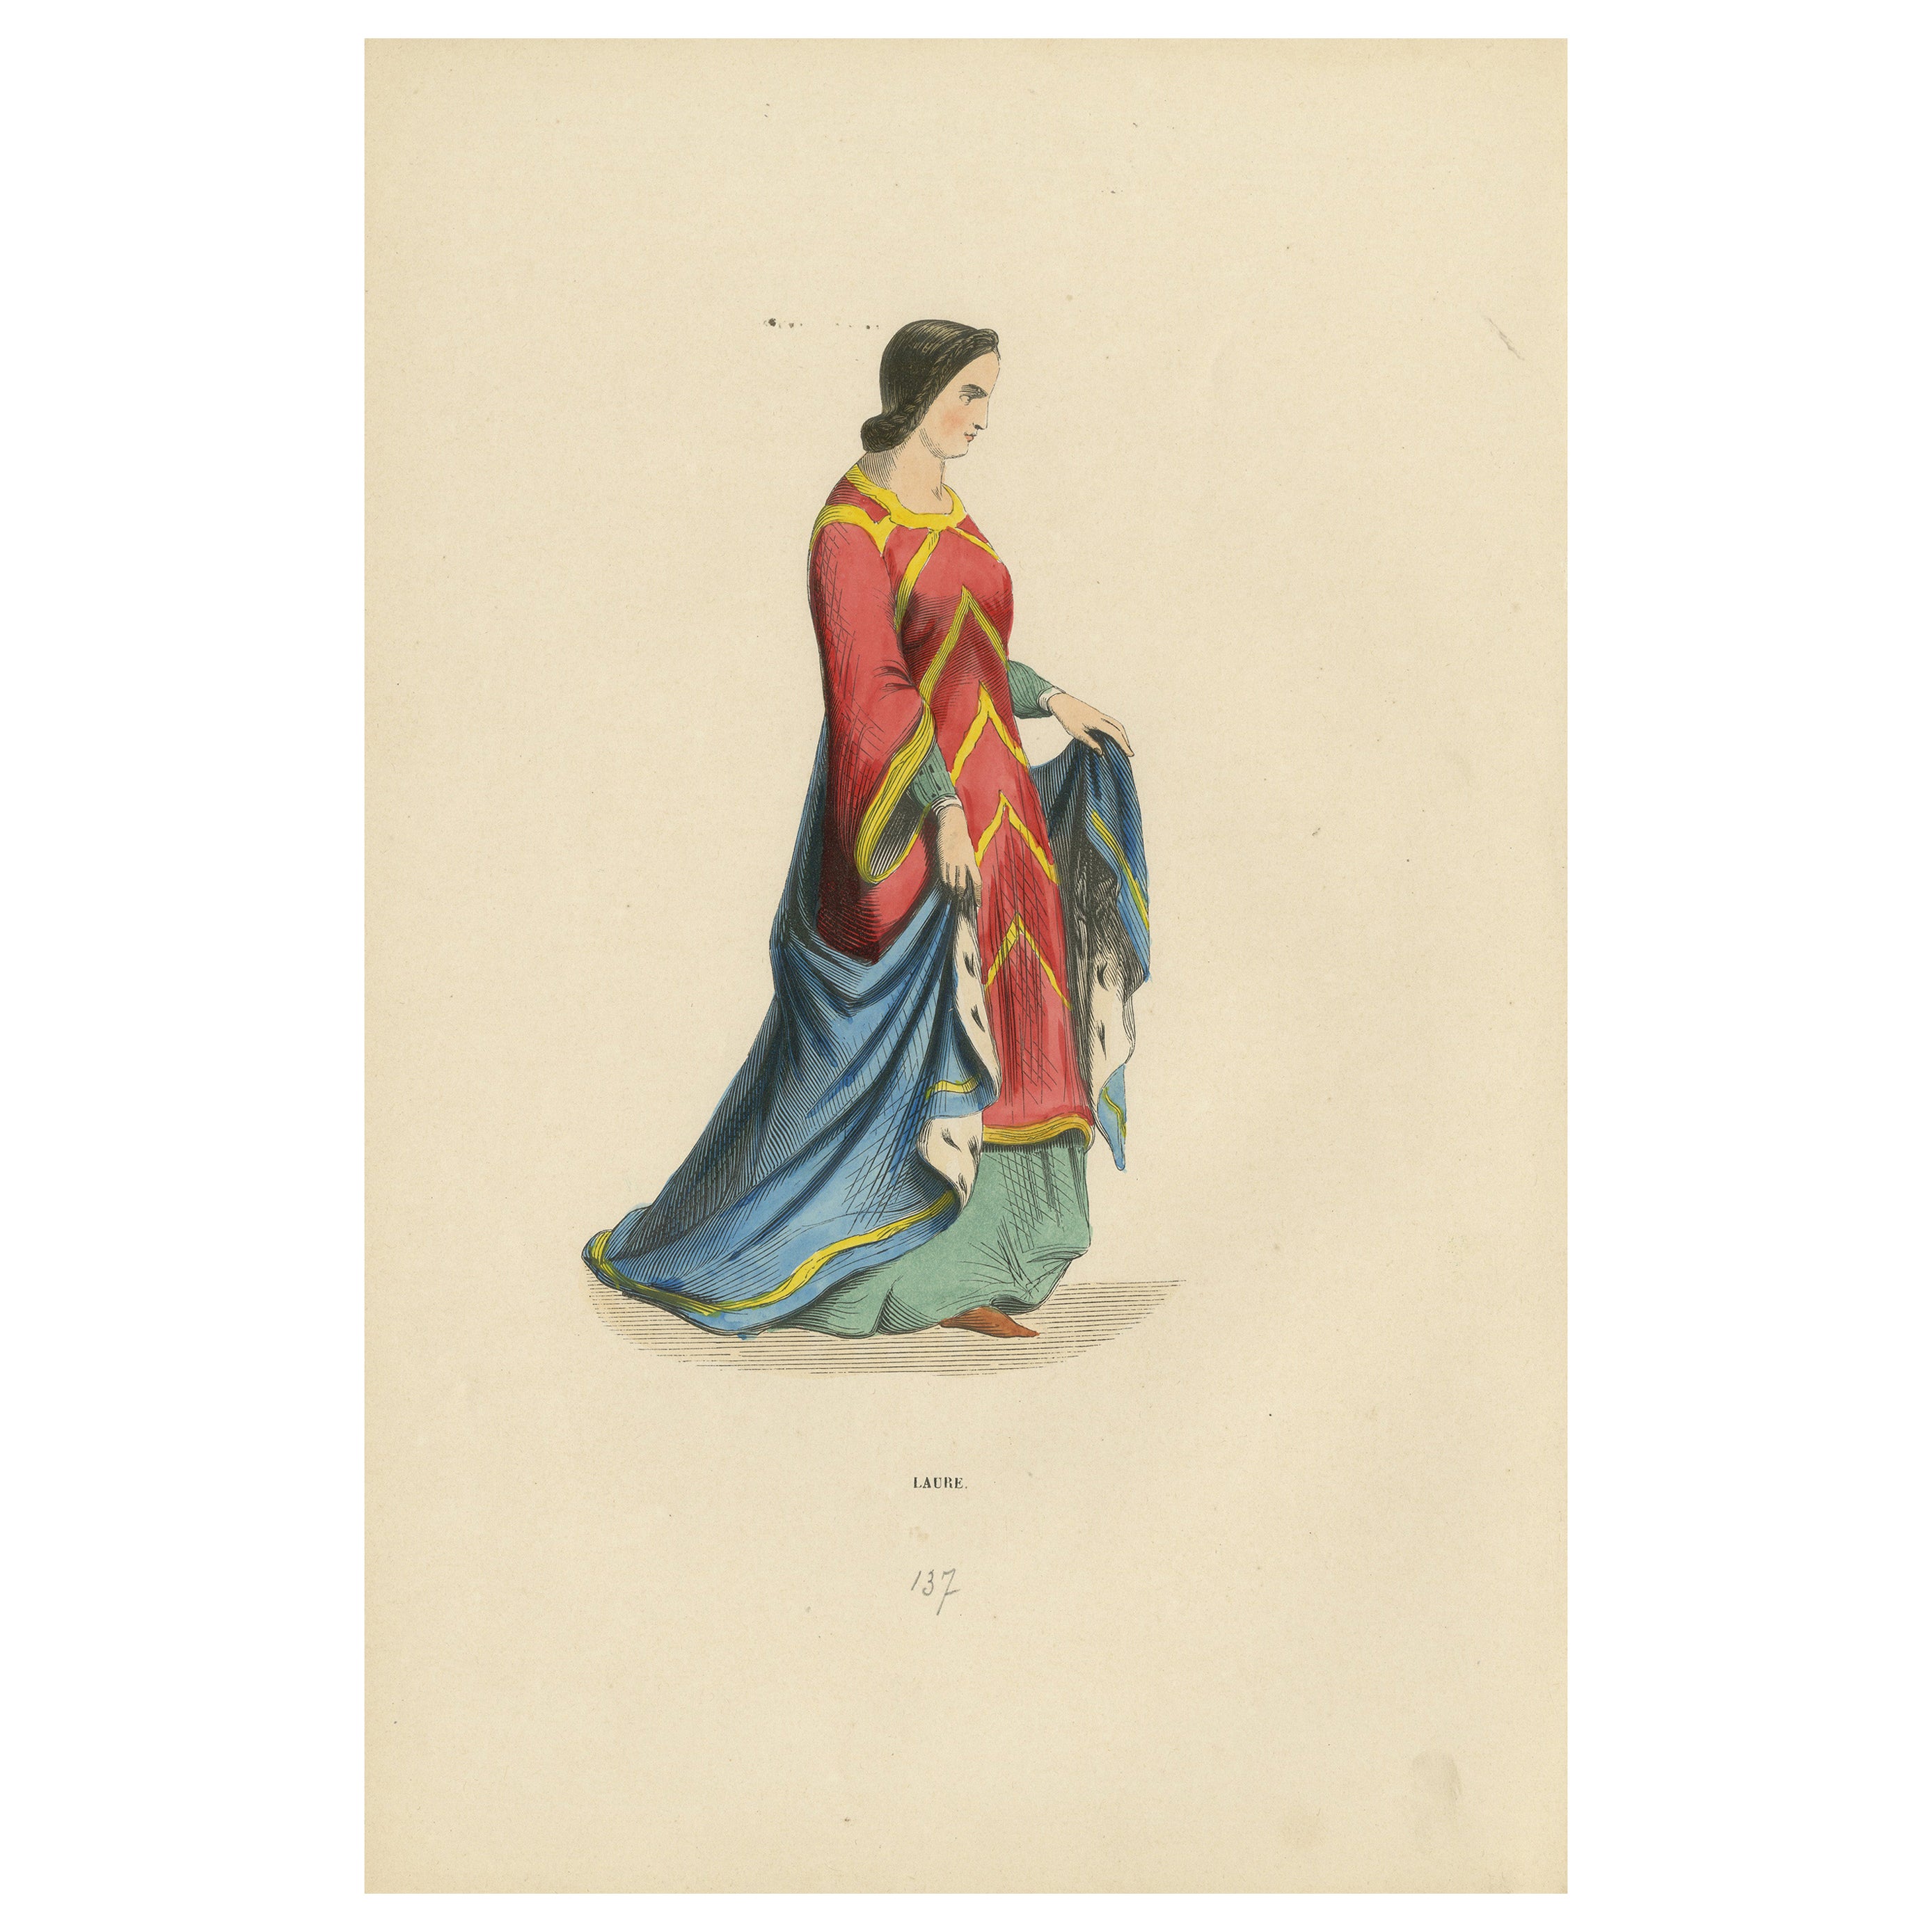 Anmut der Renaissance: Die Kleidung einer Dame im "Costume du Moyen Âge", 1847